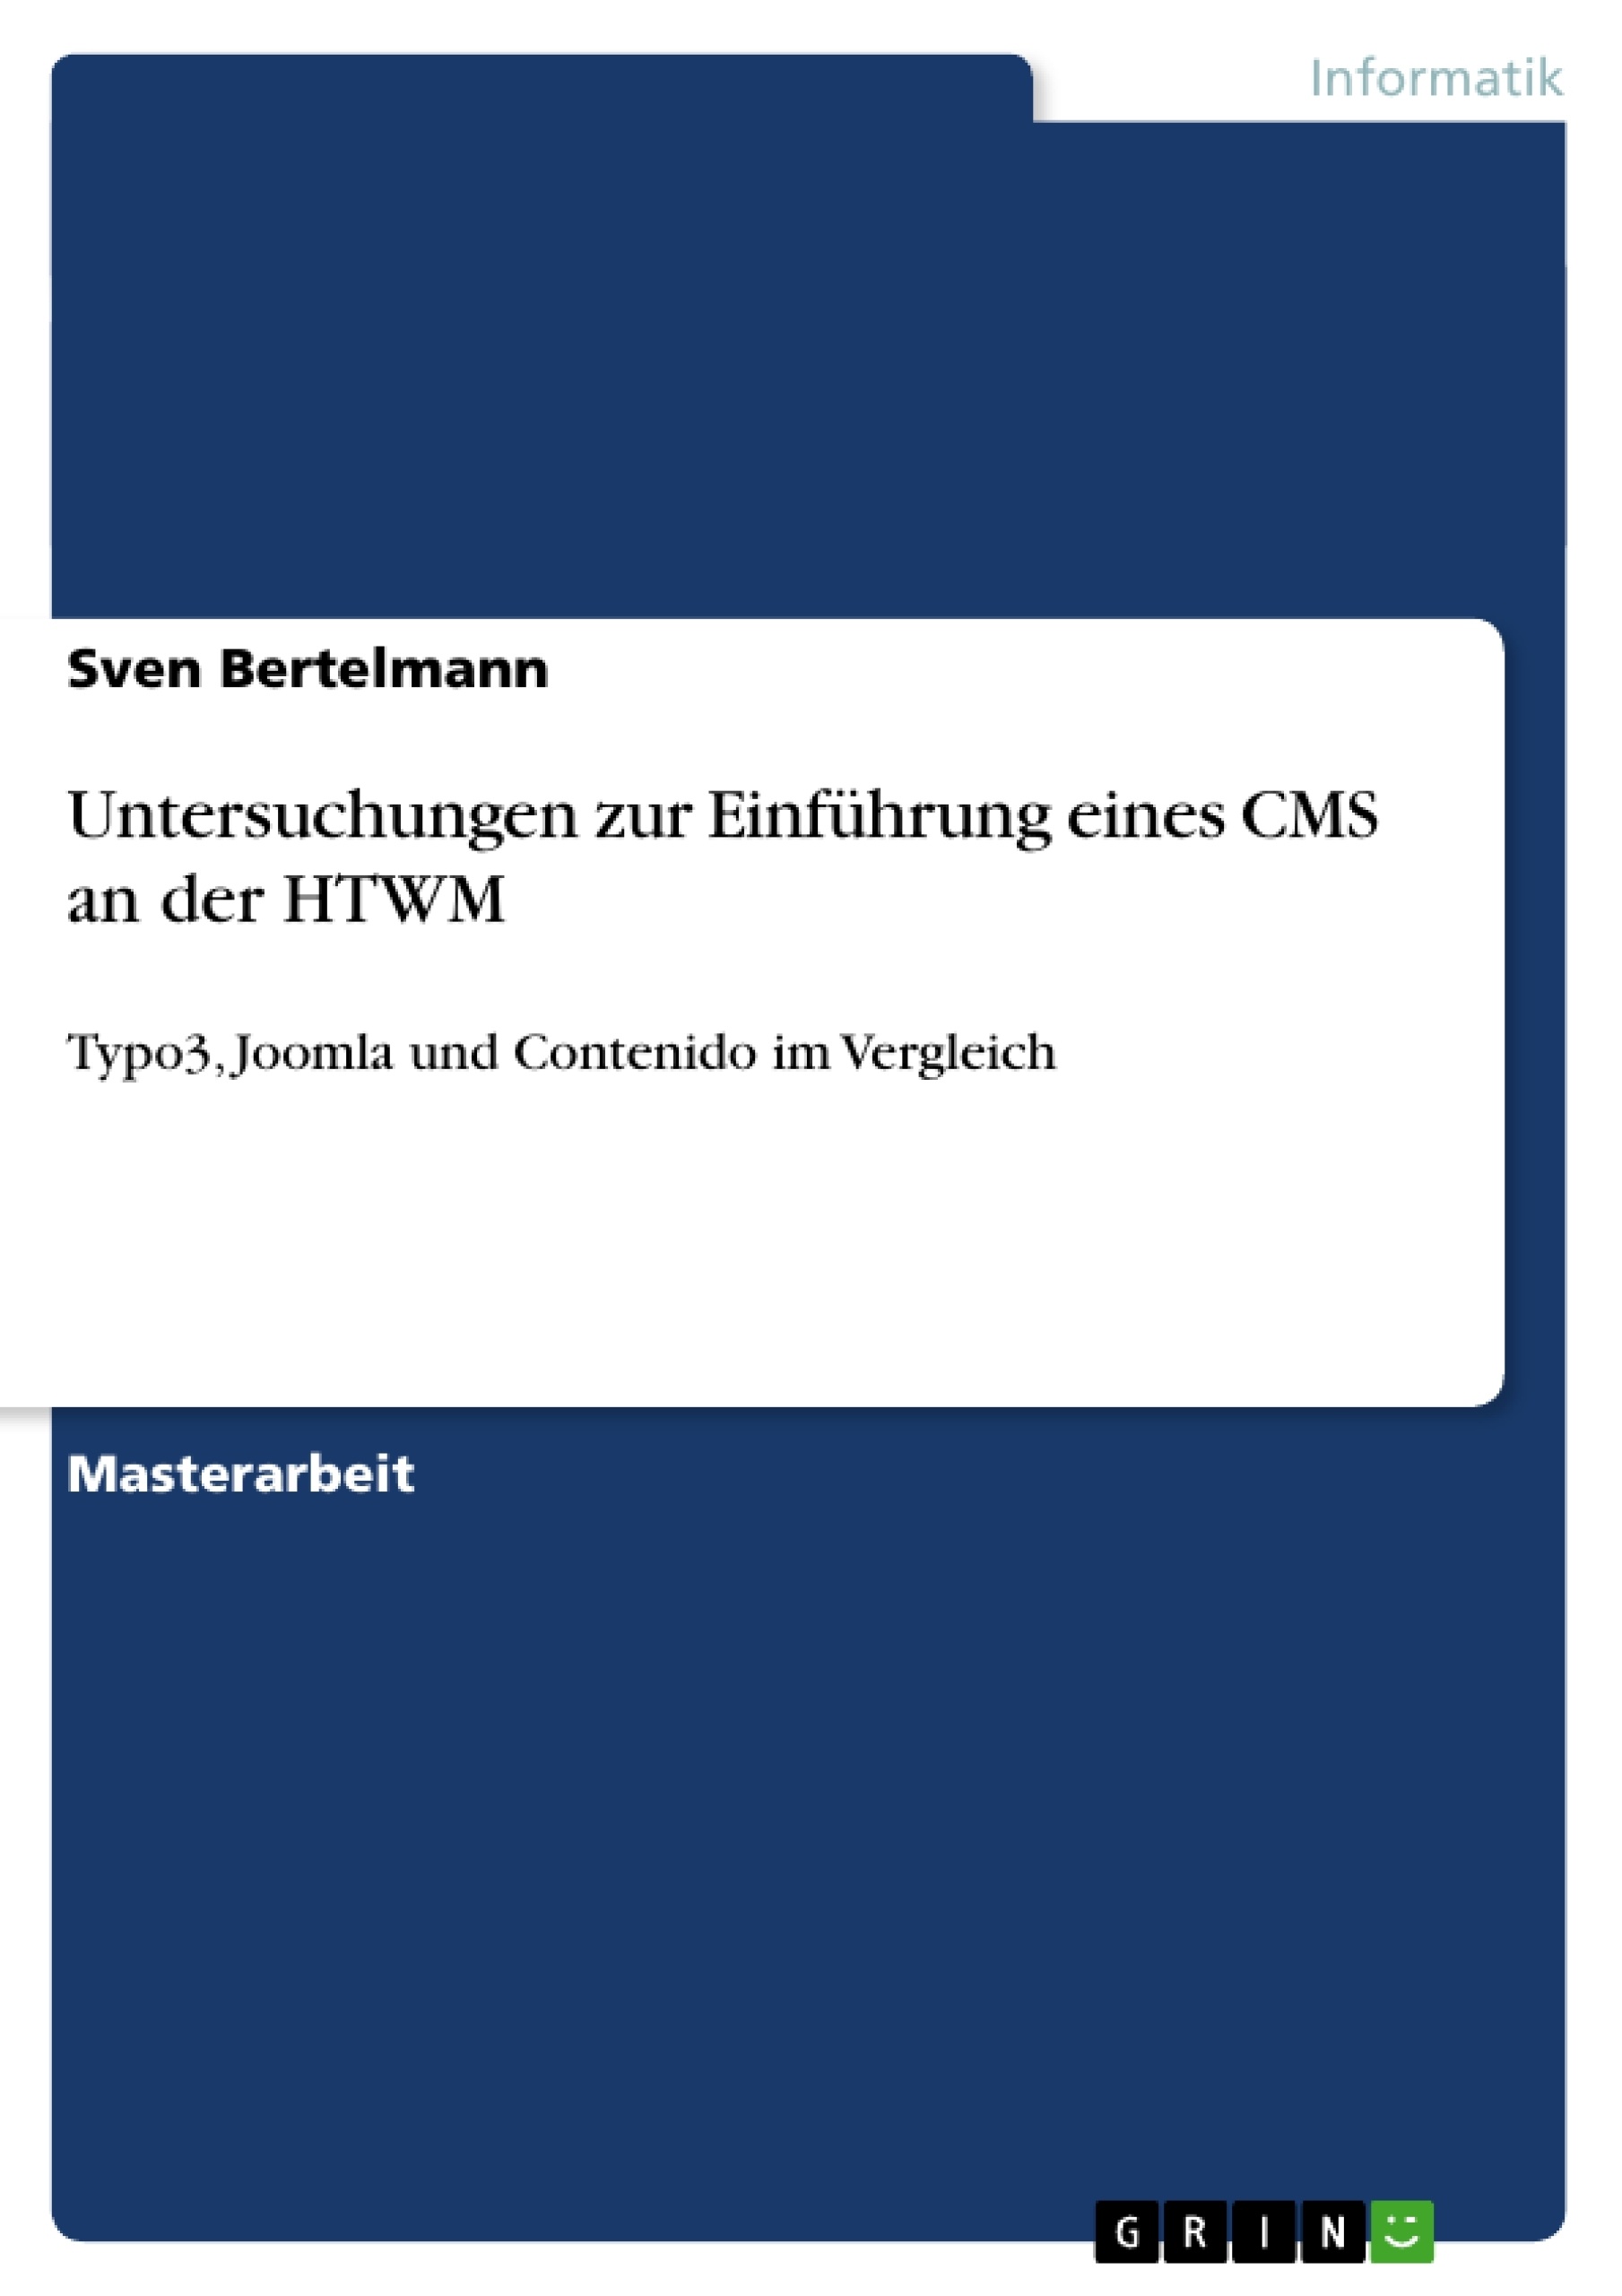 Title: Untersuchungen zur Einführung eines CMS an der HTWM